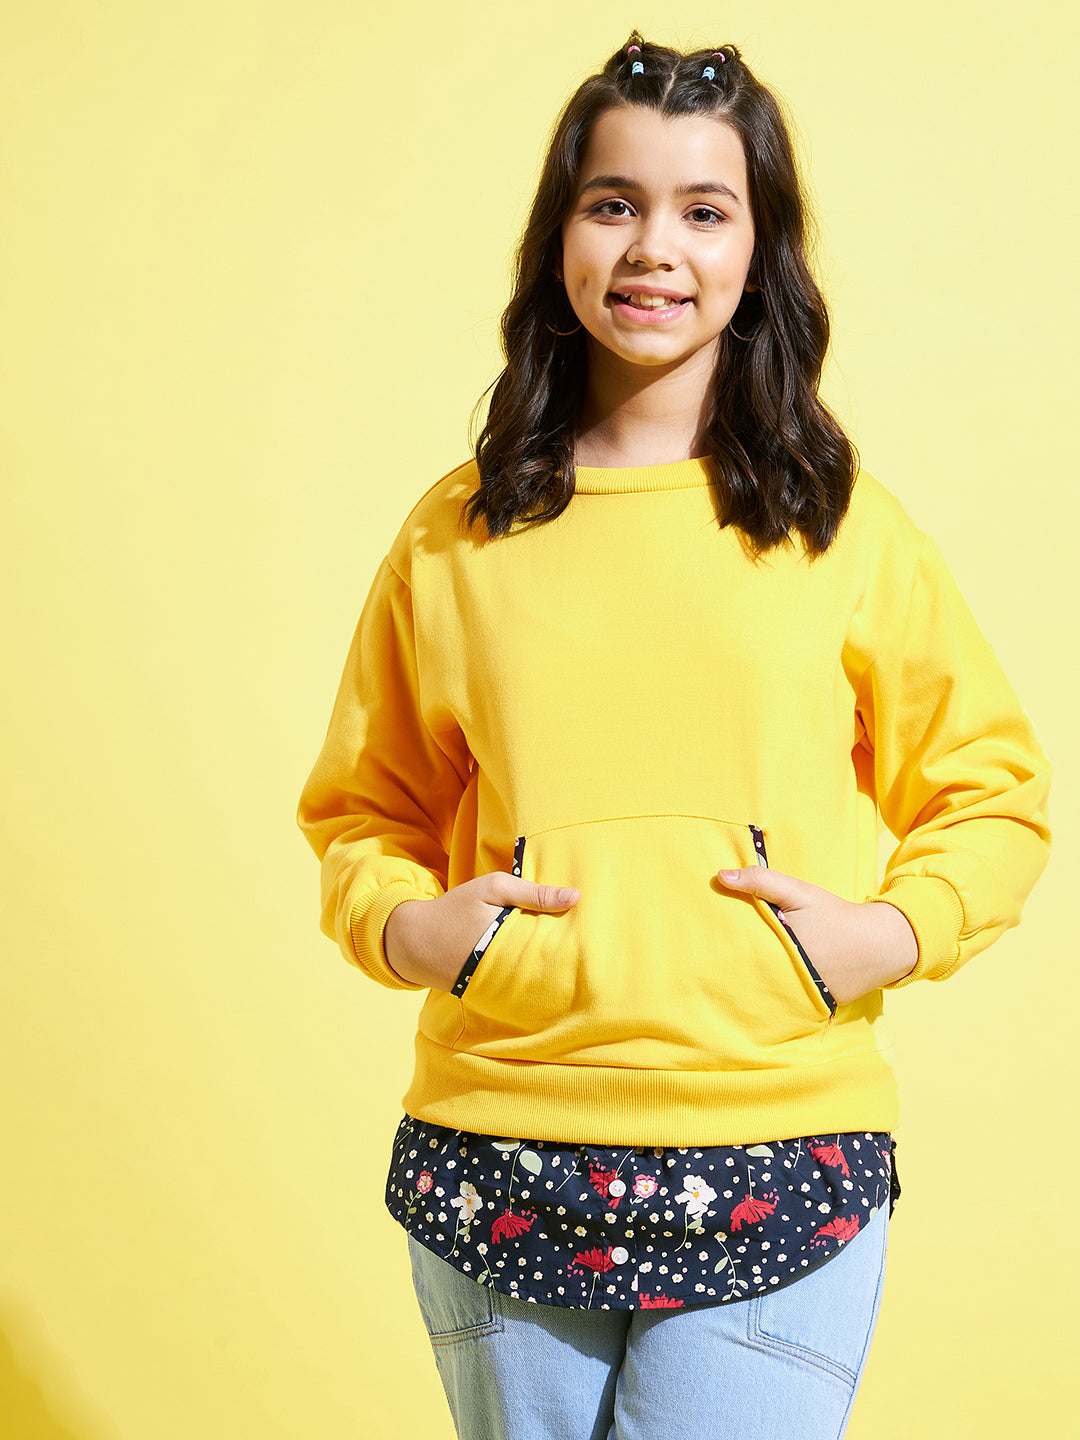 Girls Yellow Fleece Half Shirt Sweatshirt - Lyush Kids